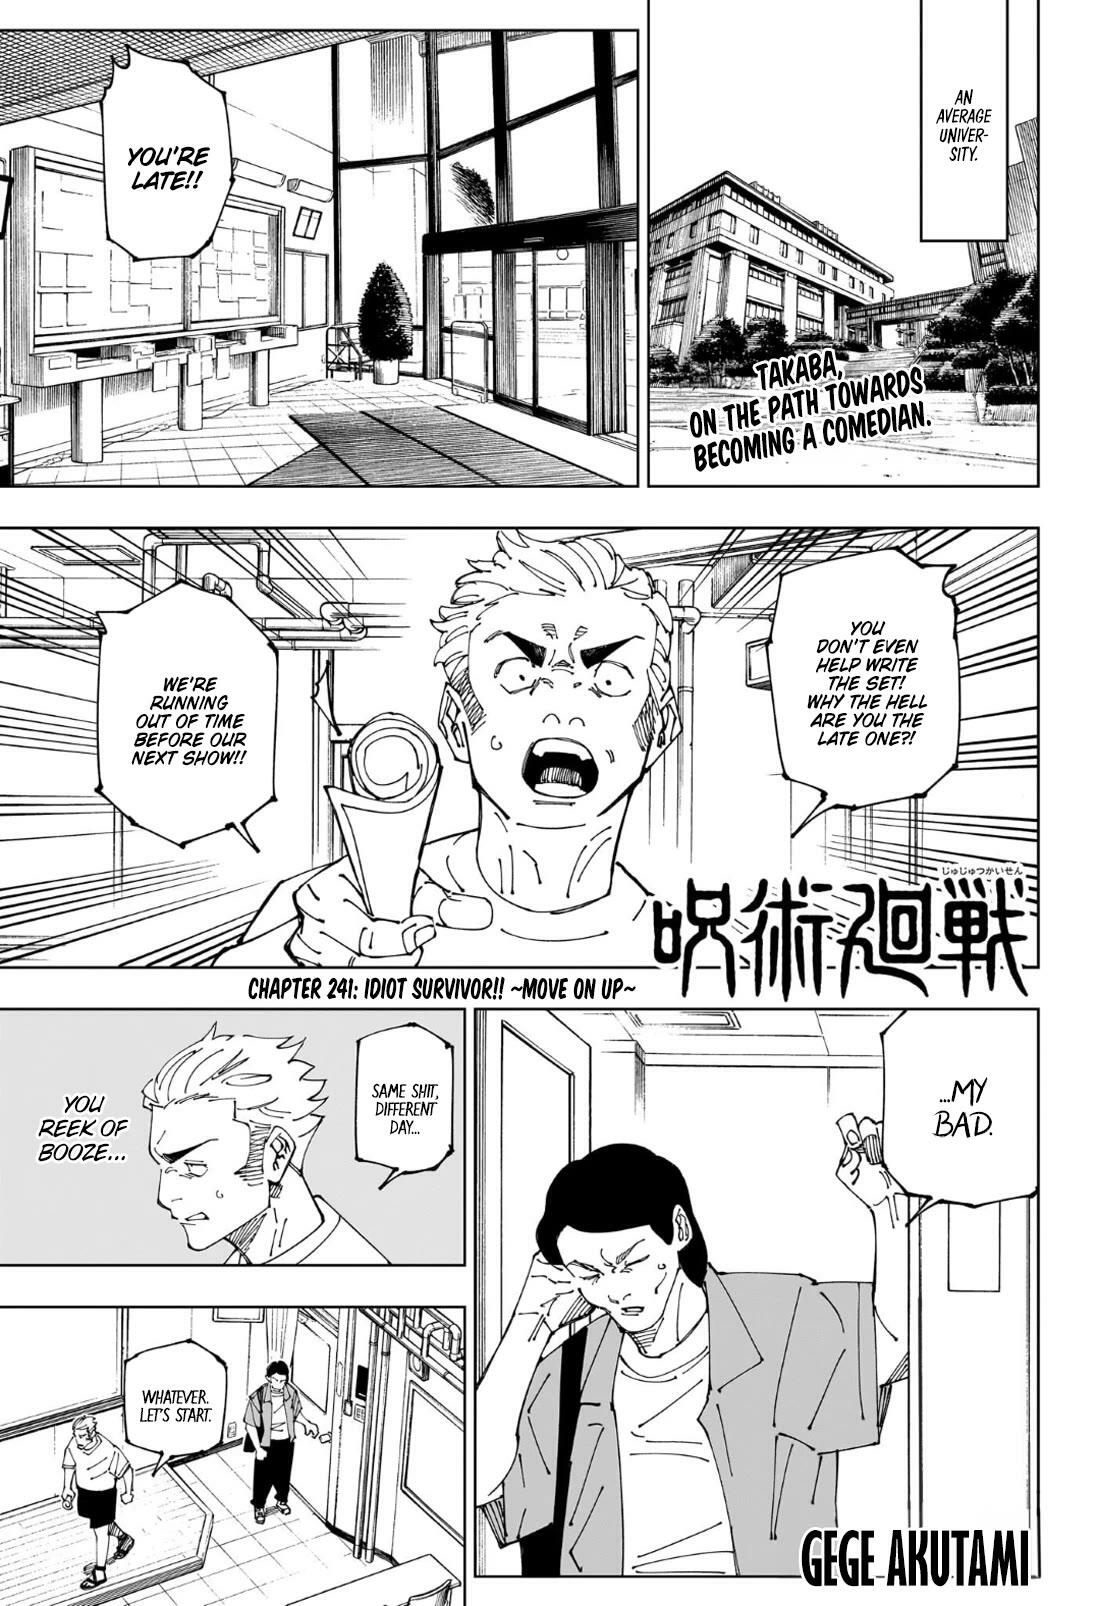 Jujutsu Kaisen Chapter 241: Idiot Survivor!! ~Move On Up~ page 1 - Mangakakalot